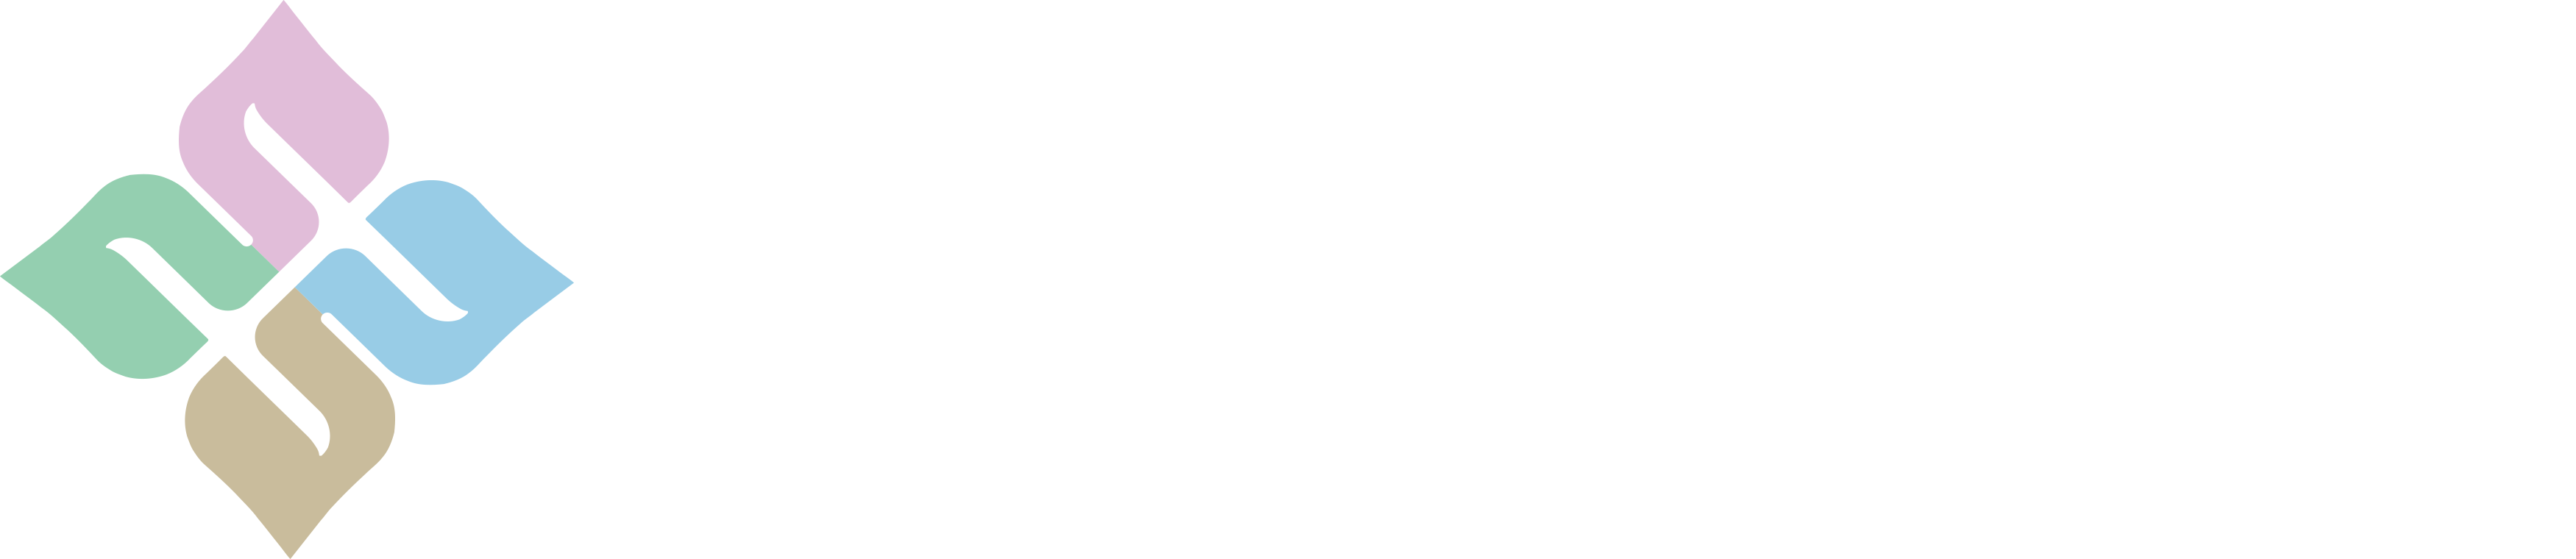 台湾_广州市花木采研生物科技有限公司